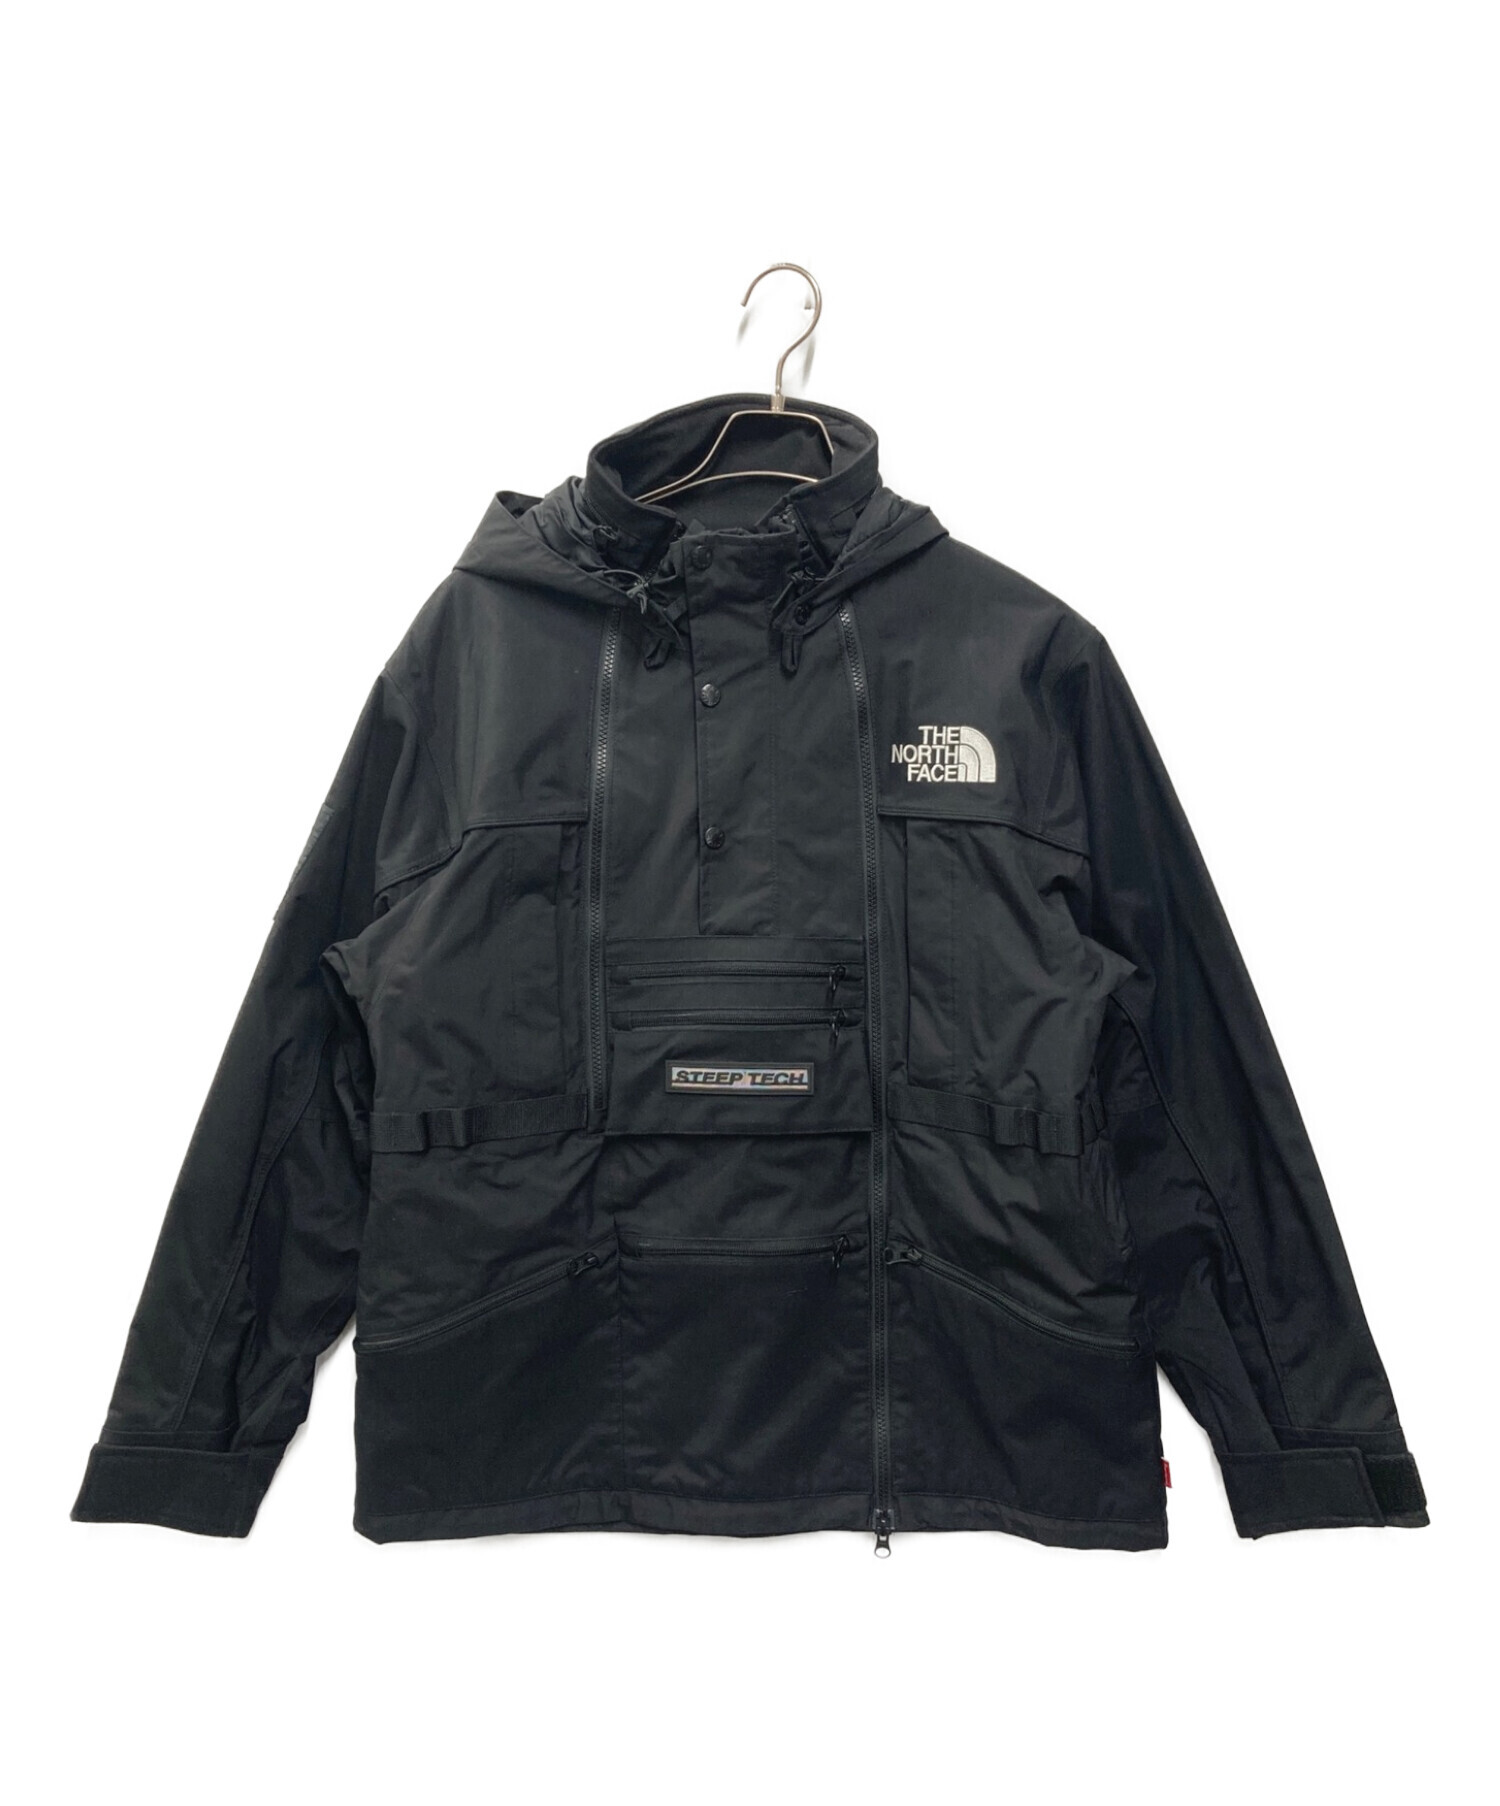 Supreme (シュプリーム) THE NORTH FACE (ザ ノース フェイス) Steep Tech Hooded Jacket ブラック  サイズ:M